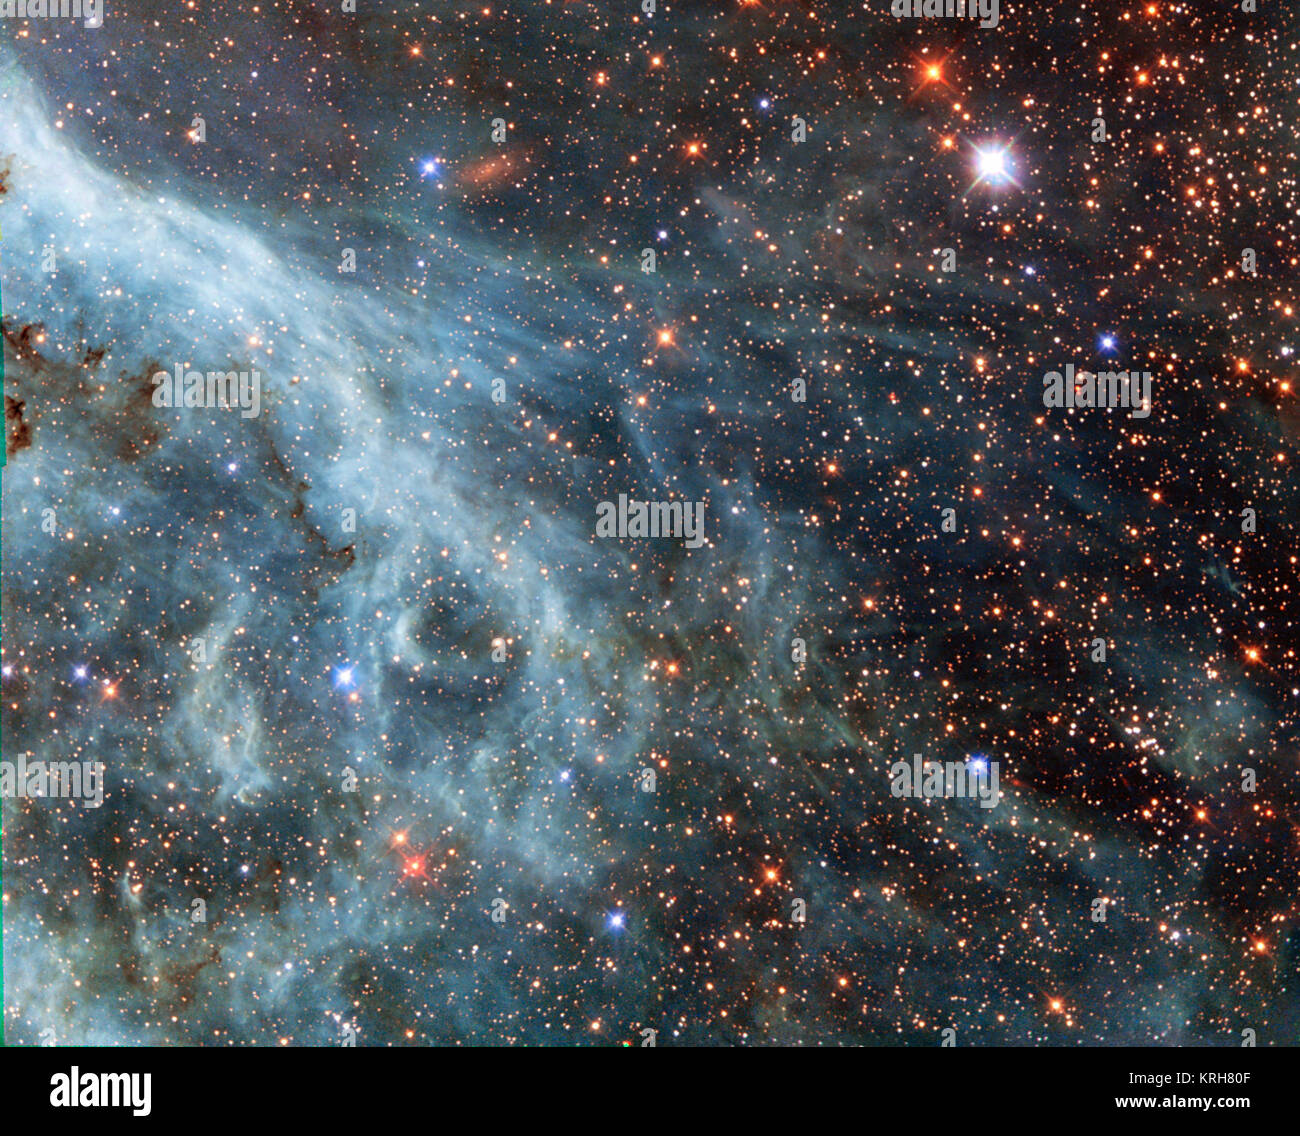 Die hell leuchtende Fontänen in diesem Bild zu sehen sind, erinnert an ein Unterwasser-Szene, mit Türkis getönten Ströme und nebulöse Stränge, die in der Umgebung. Dies ist jedoch kein Meer. Dieses Bild zeigt wirklich Teil der Großen Magellanschen Wolke (LMC), eine kleine Galaxie, die Bahnen in der Nähe unserer Galaxie, der Milchstraße, und erscheint als blob in unserem Himmel verschwimmt. Die NASA/ESA Hubble Space Telescope hat viele Male in dieser Galaxie spähte, lösen Sie atemberaubende Bilder von den wirbelnden Wolken aus Gas und funkelnde Sterne (BSA 9944 a, heic 1301, potw 1408 a). Dieses Bild zeigt einen Teil des Tarantula N Stockfoto